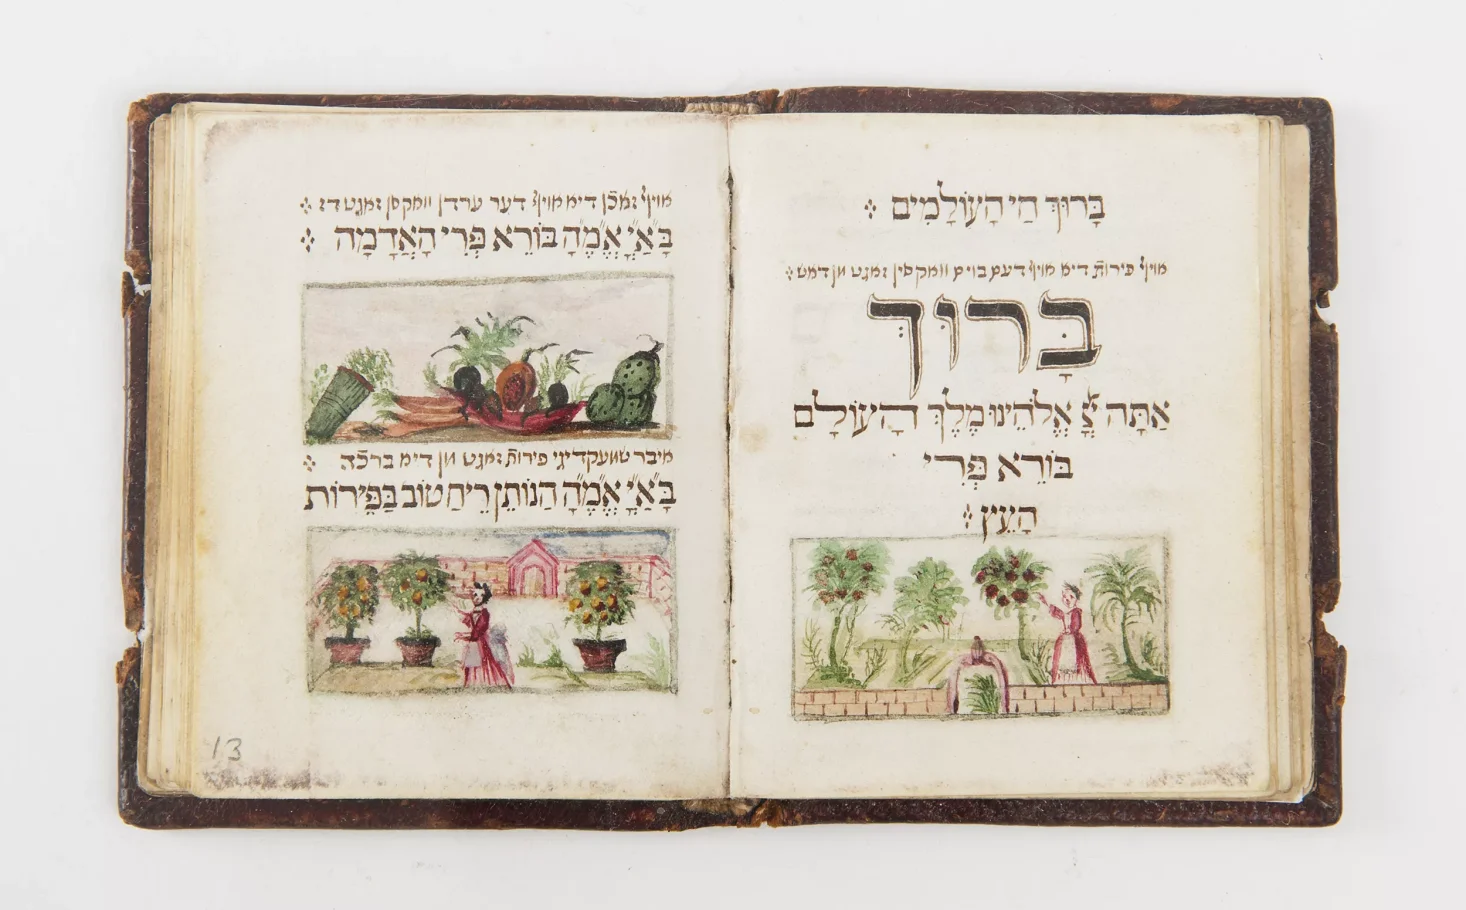 Na stronie ksiązki dwie kolorowe ilustracje. Górna pokazuje różne warzywa, dolna pokazuje kobietę przed drzewami owocowymi. W tle widoczny dom.